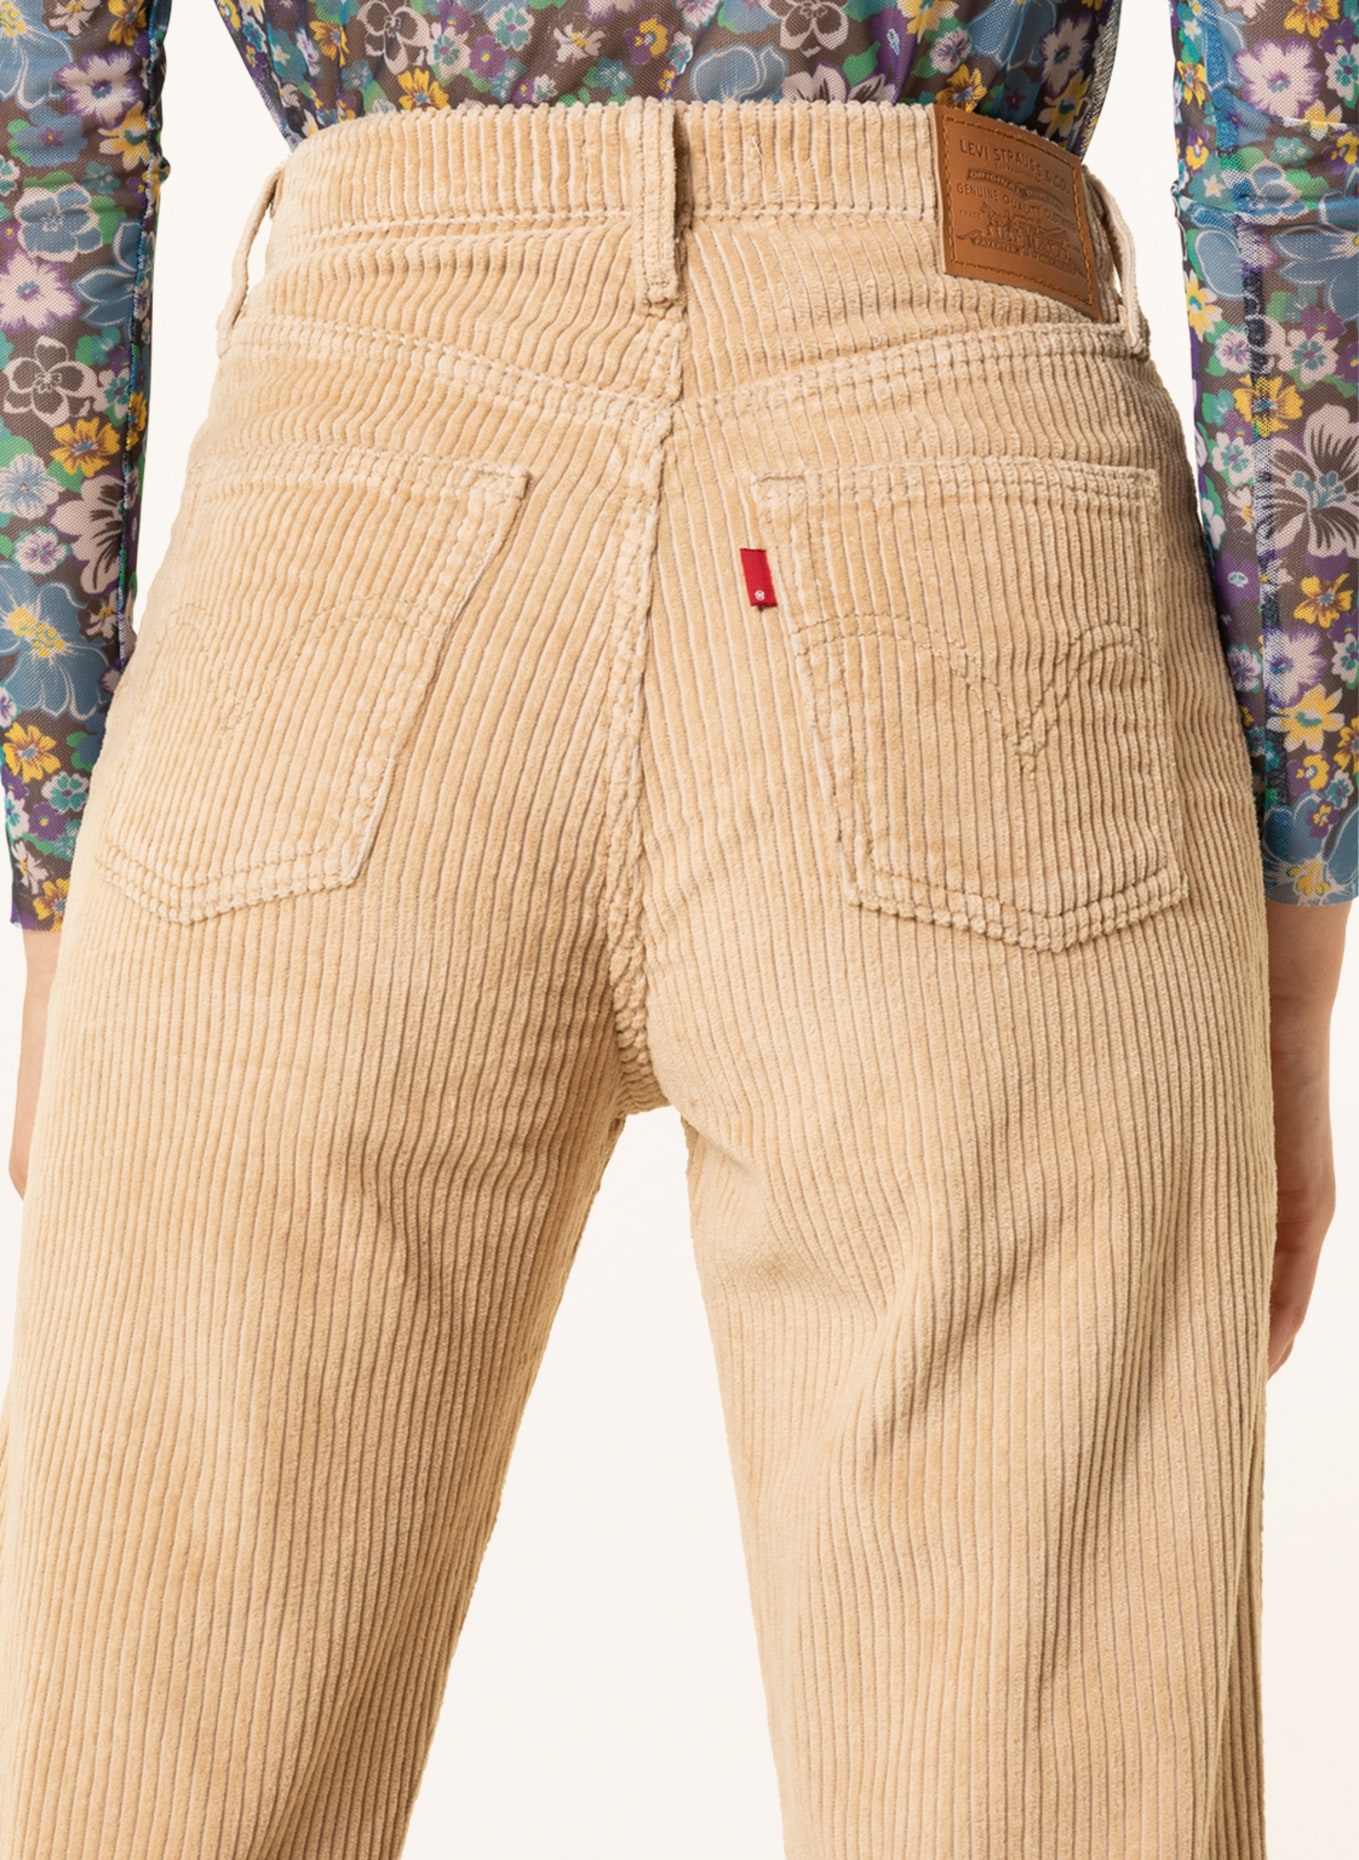 Levis Corduroy Jeans | ShopStyle